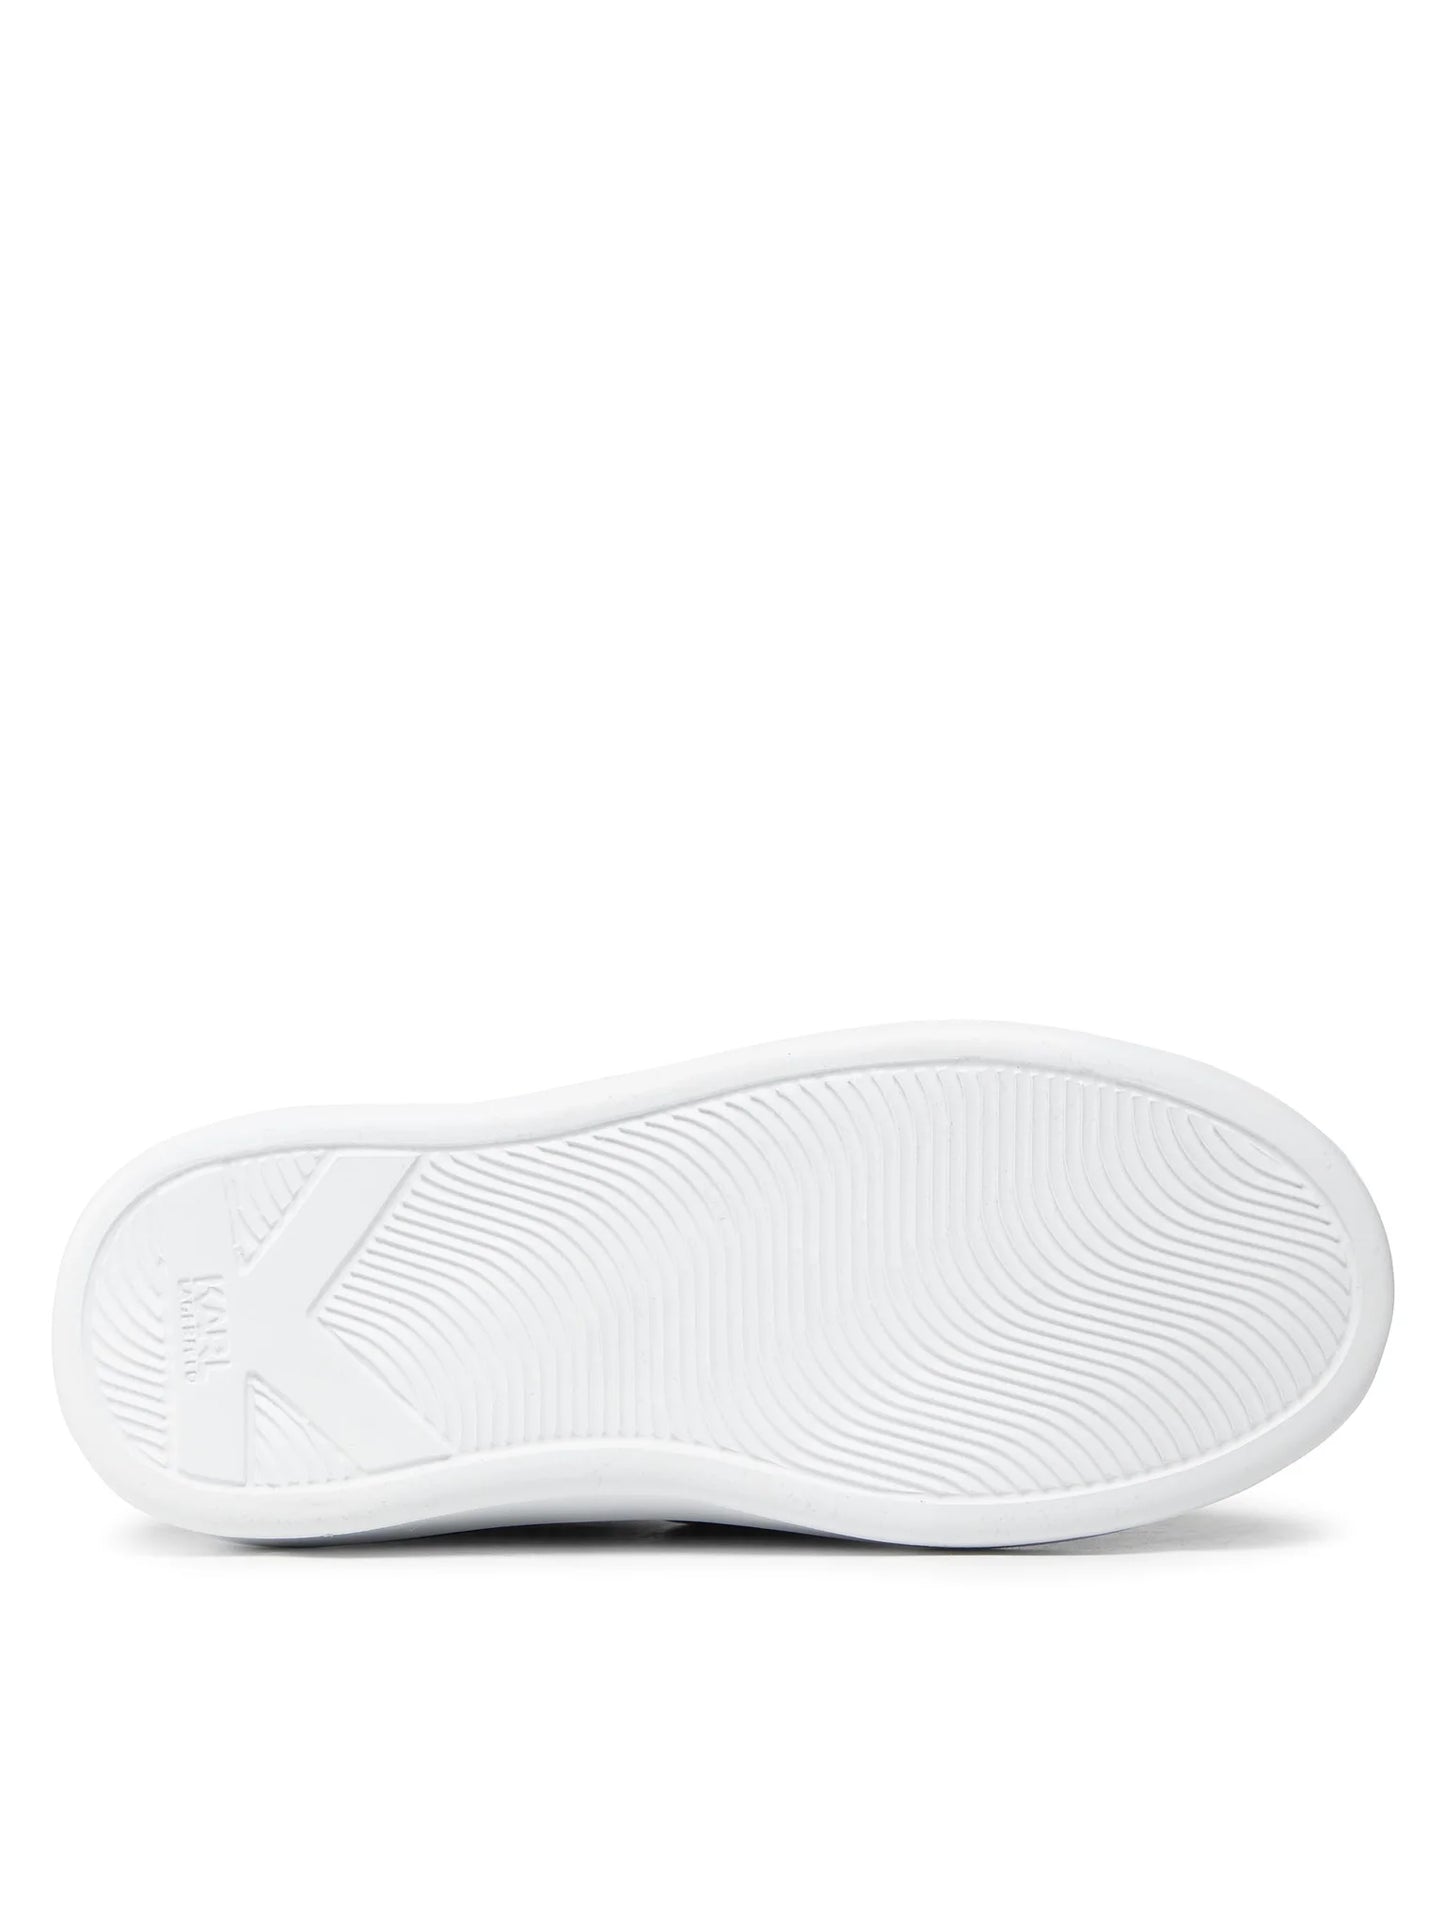 KARL LAGERFELD Sneakers KL62537 - Negru